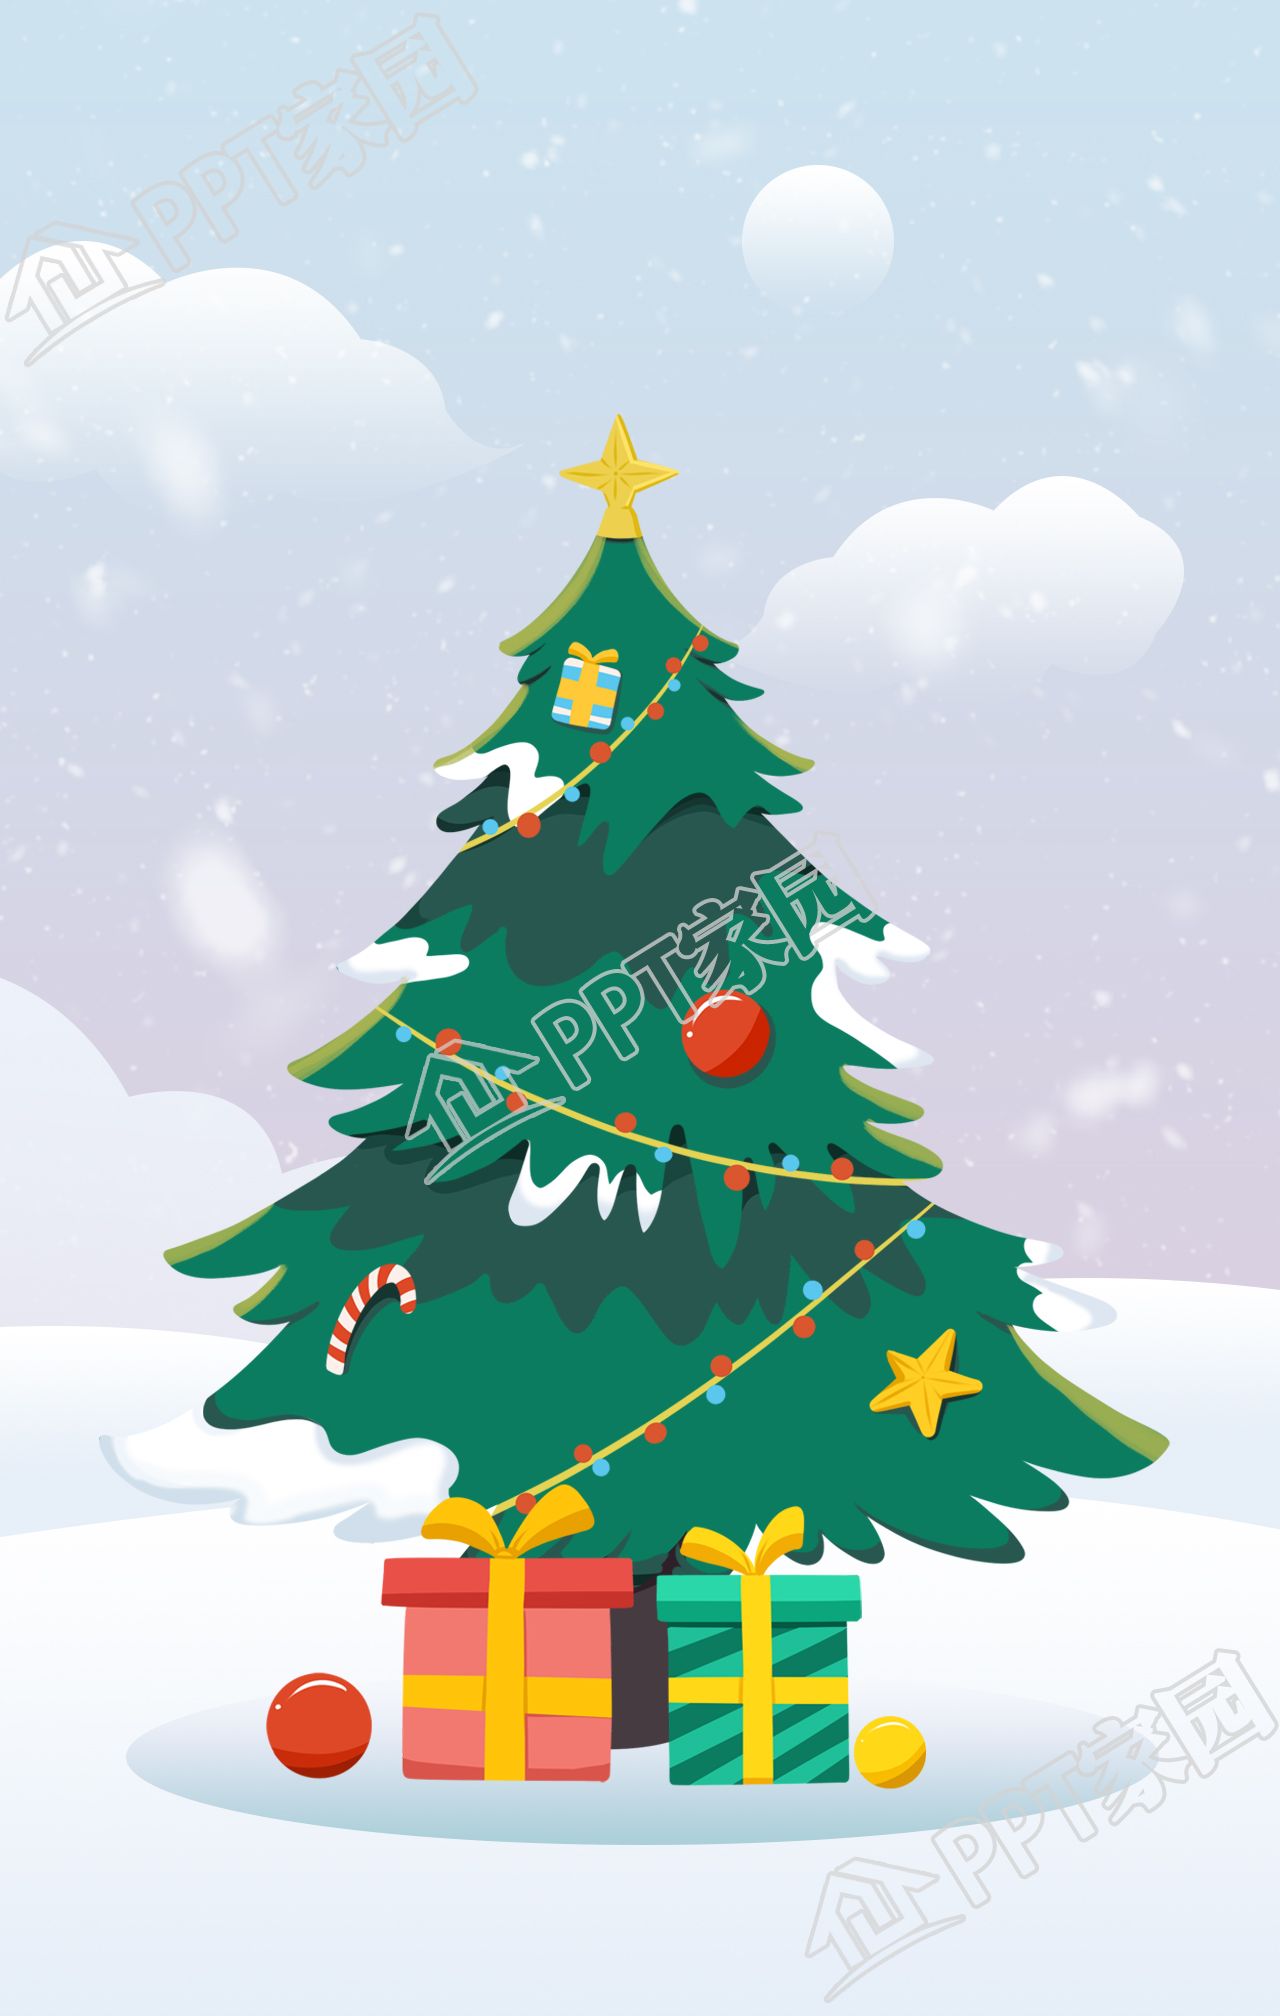 手绘插画风格雪景圣诞树礼物背景图片素材